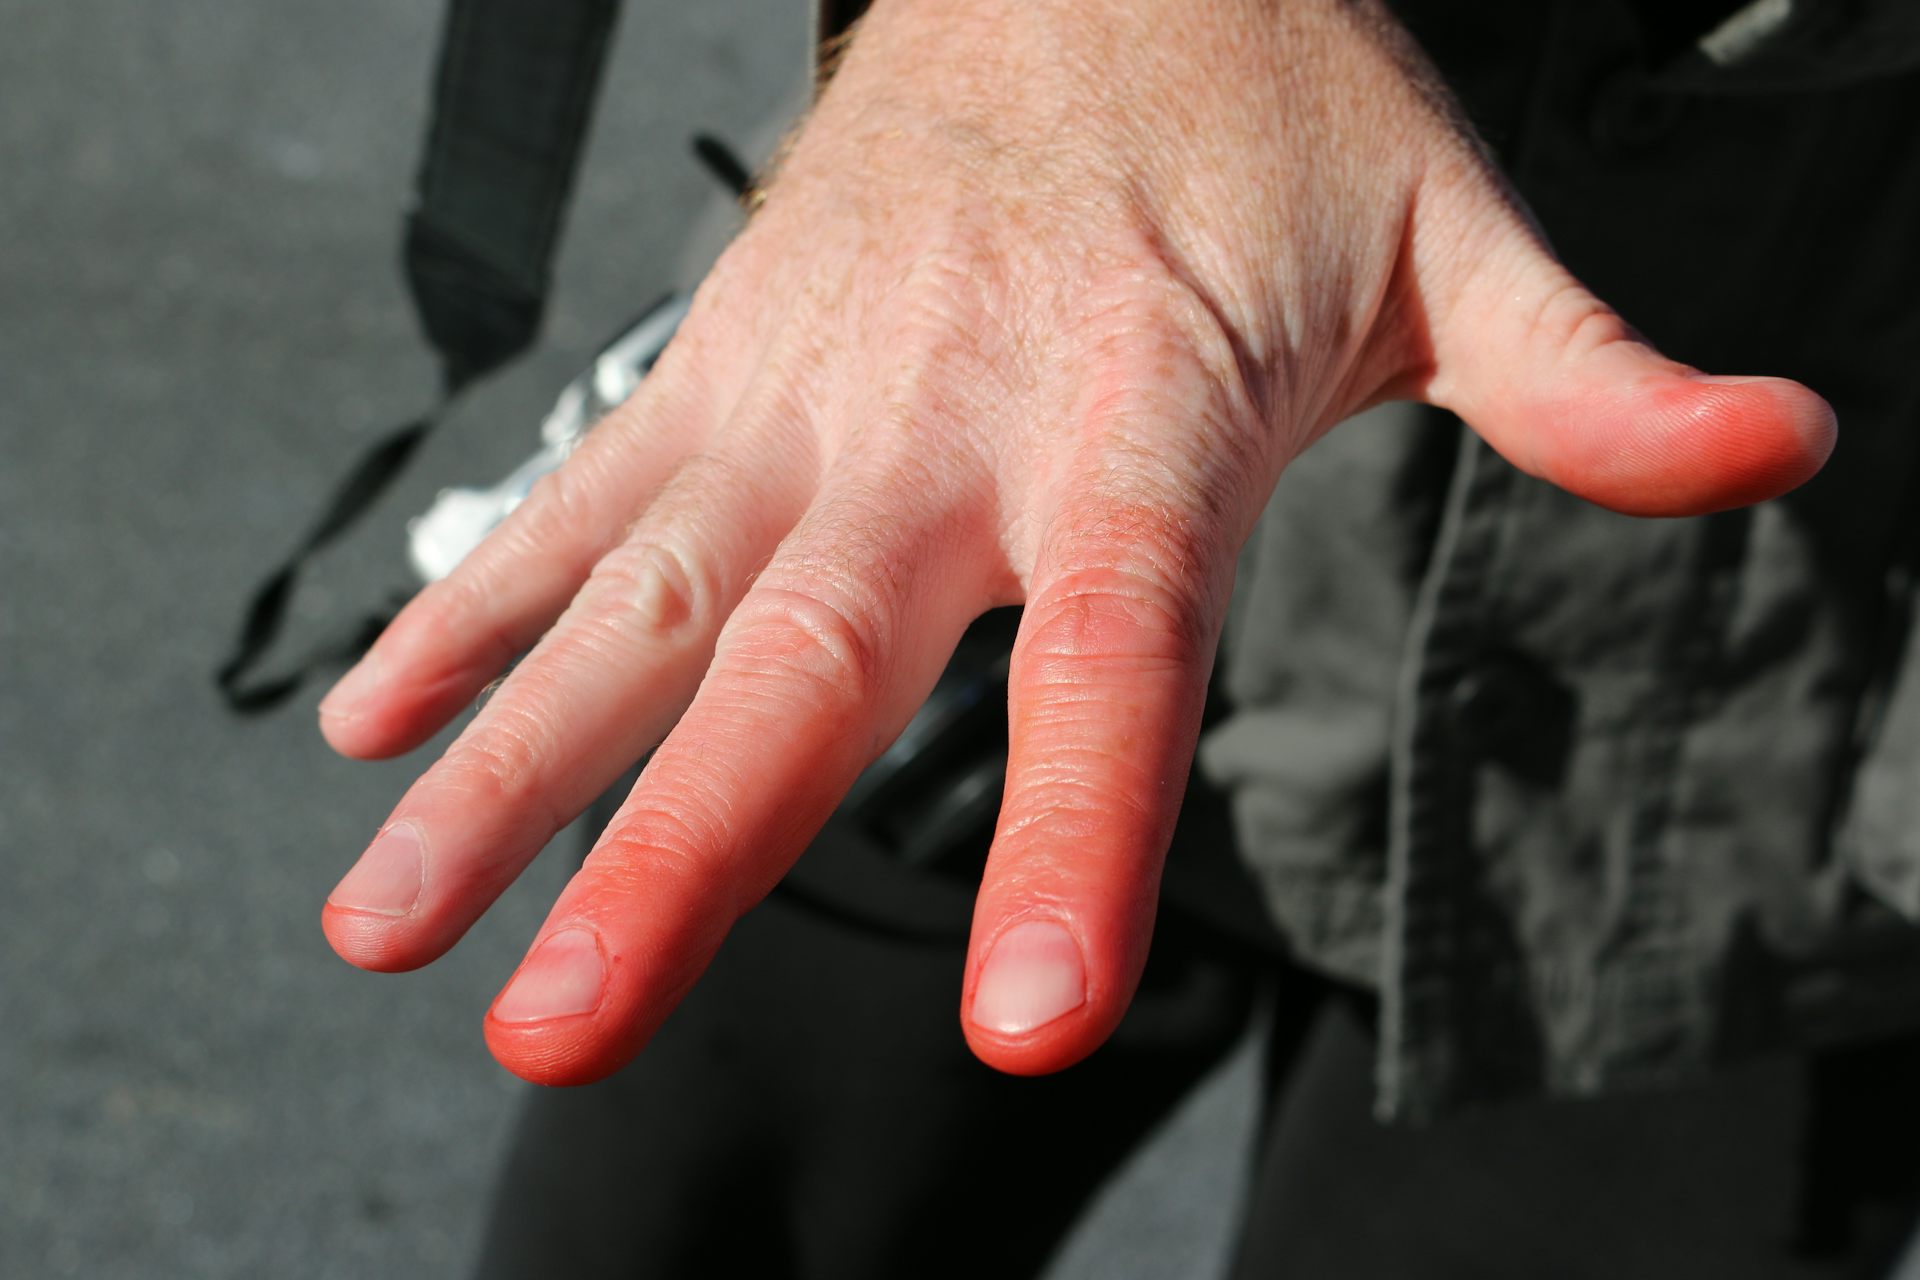  fingre blev røde af frostbite.